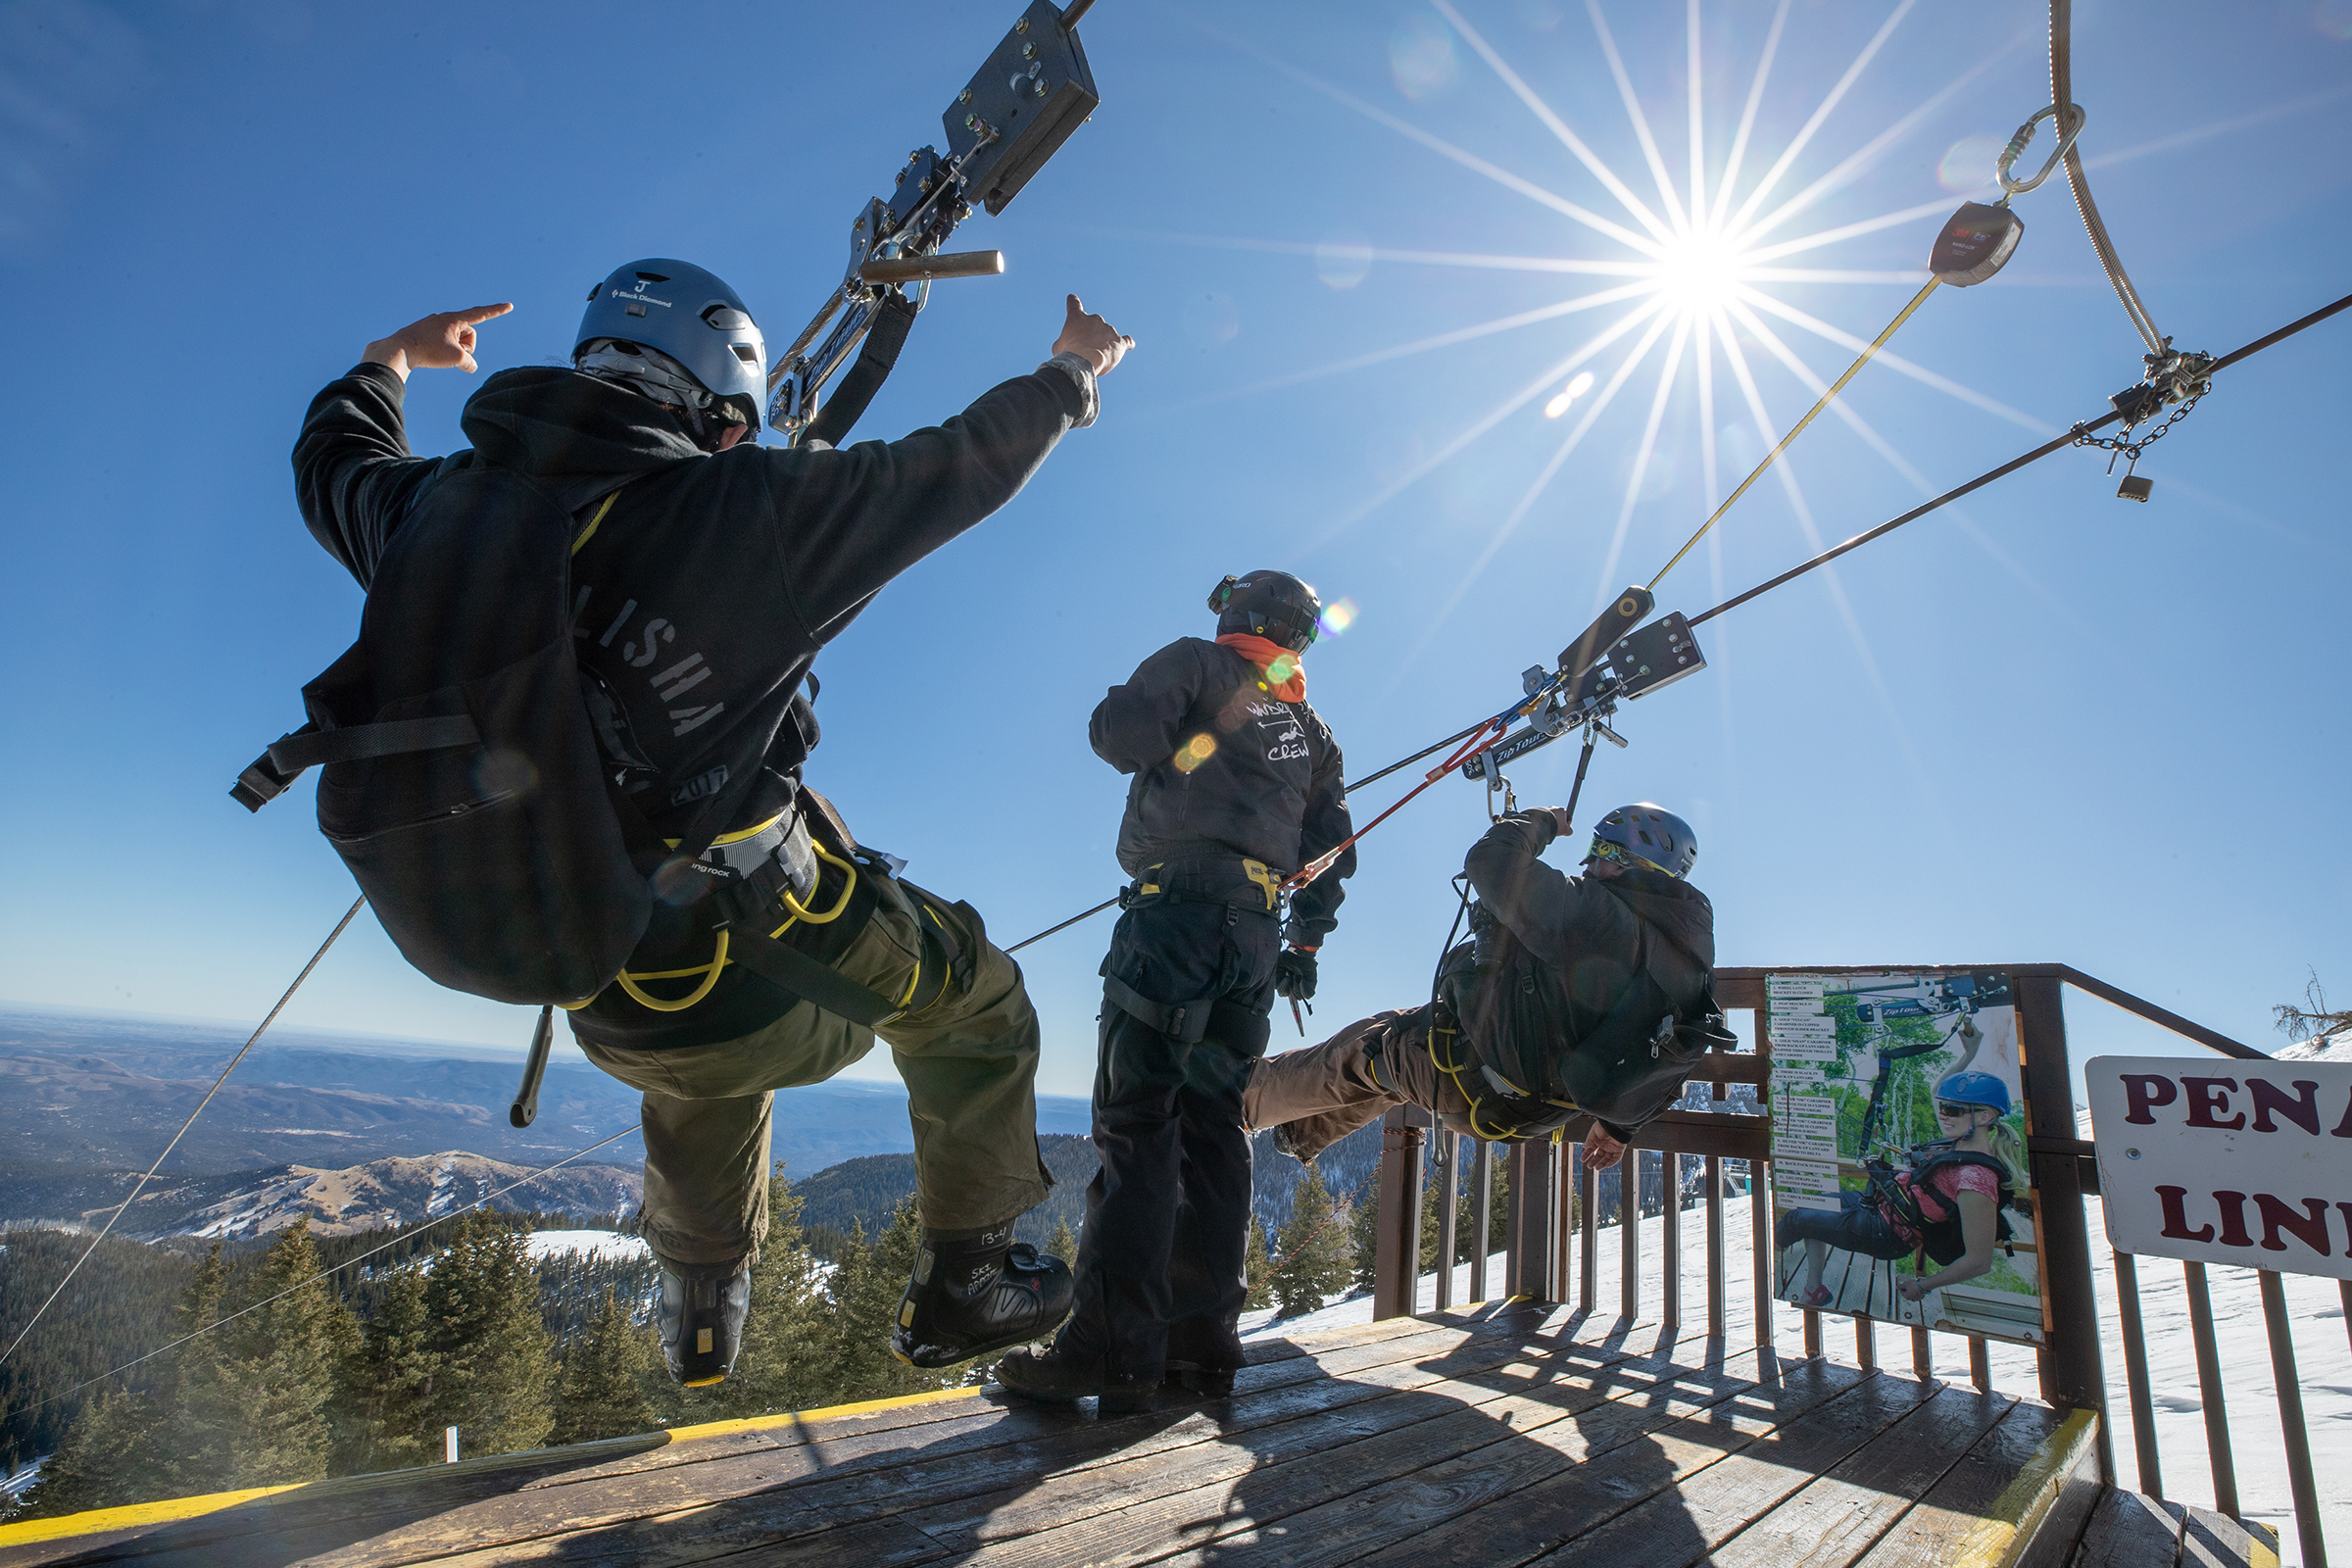 ZipTour at Ski Apache: The Highest New Mexico Zipline